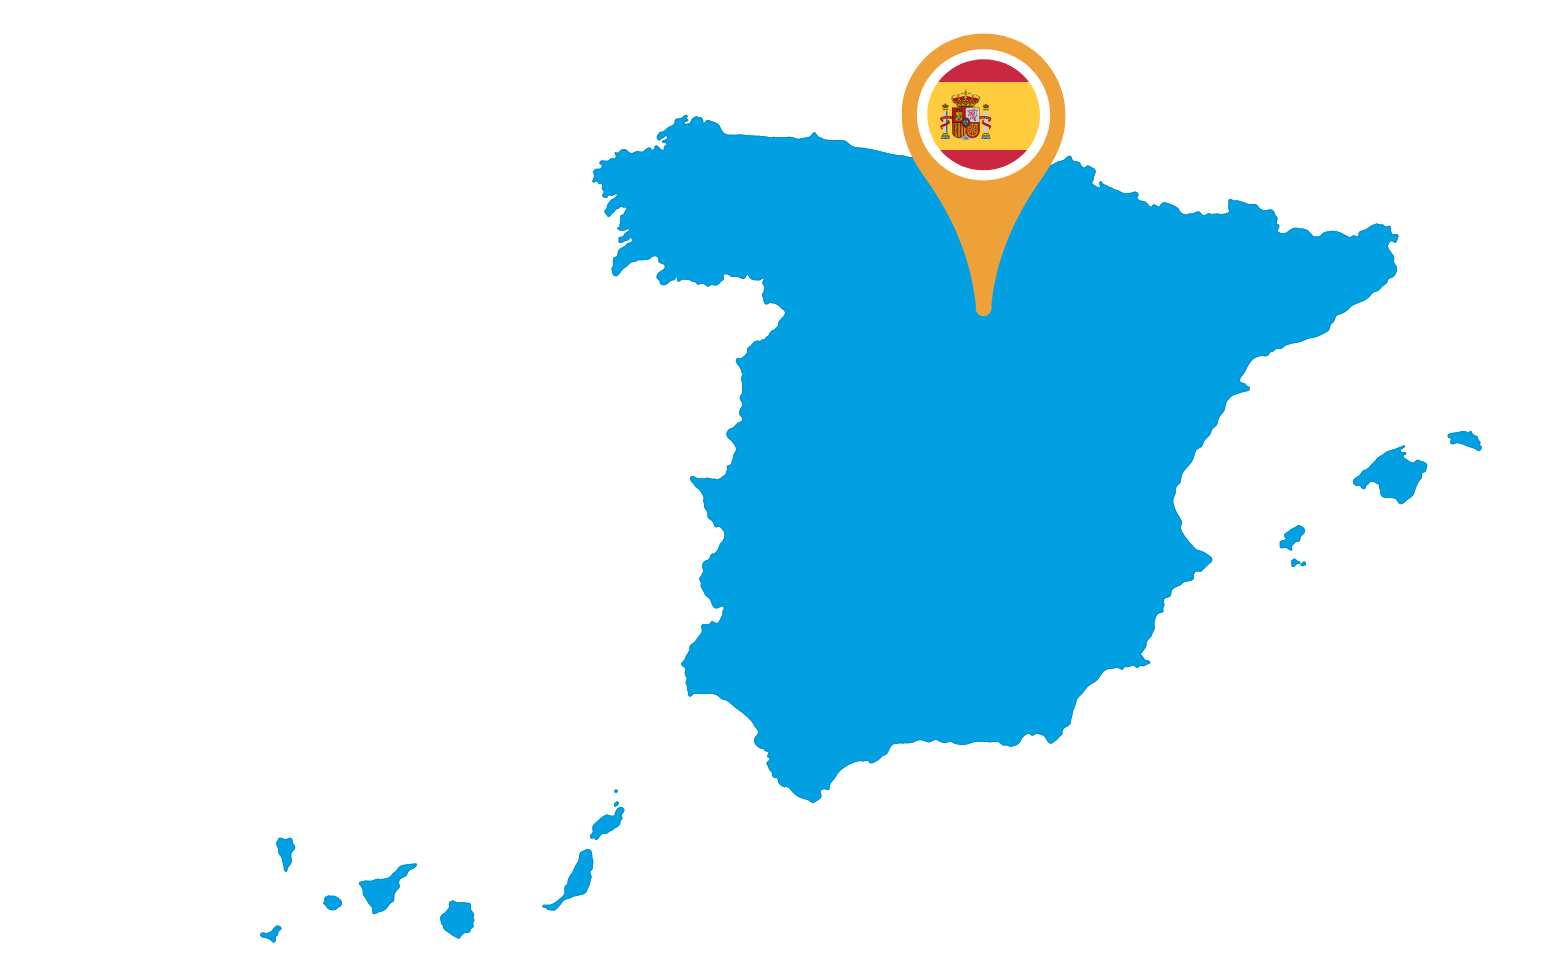 Plattegrond in het blauw van Spanje